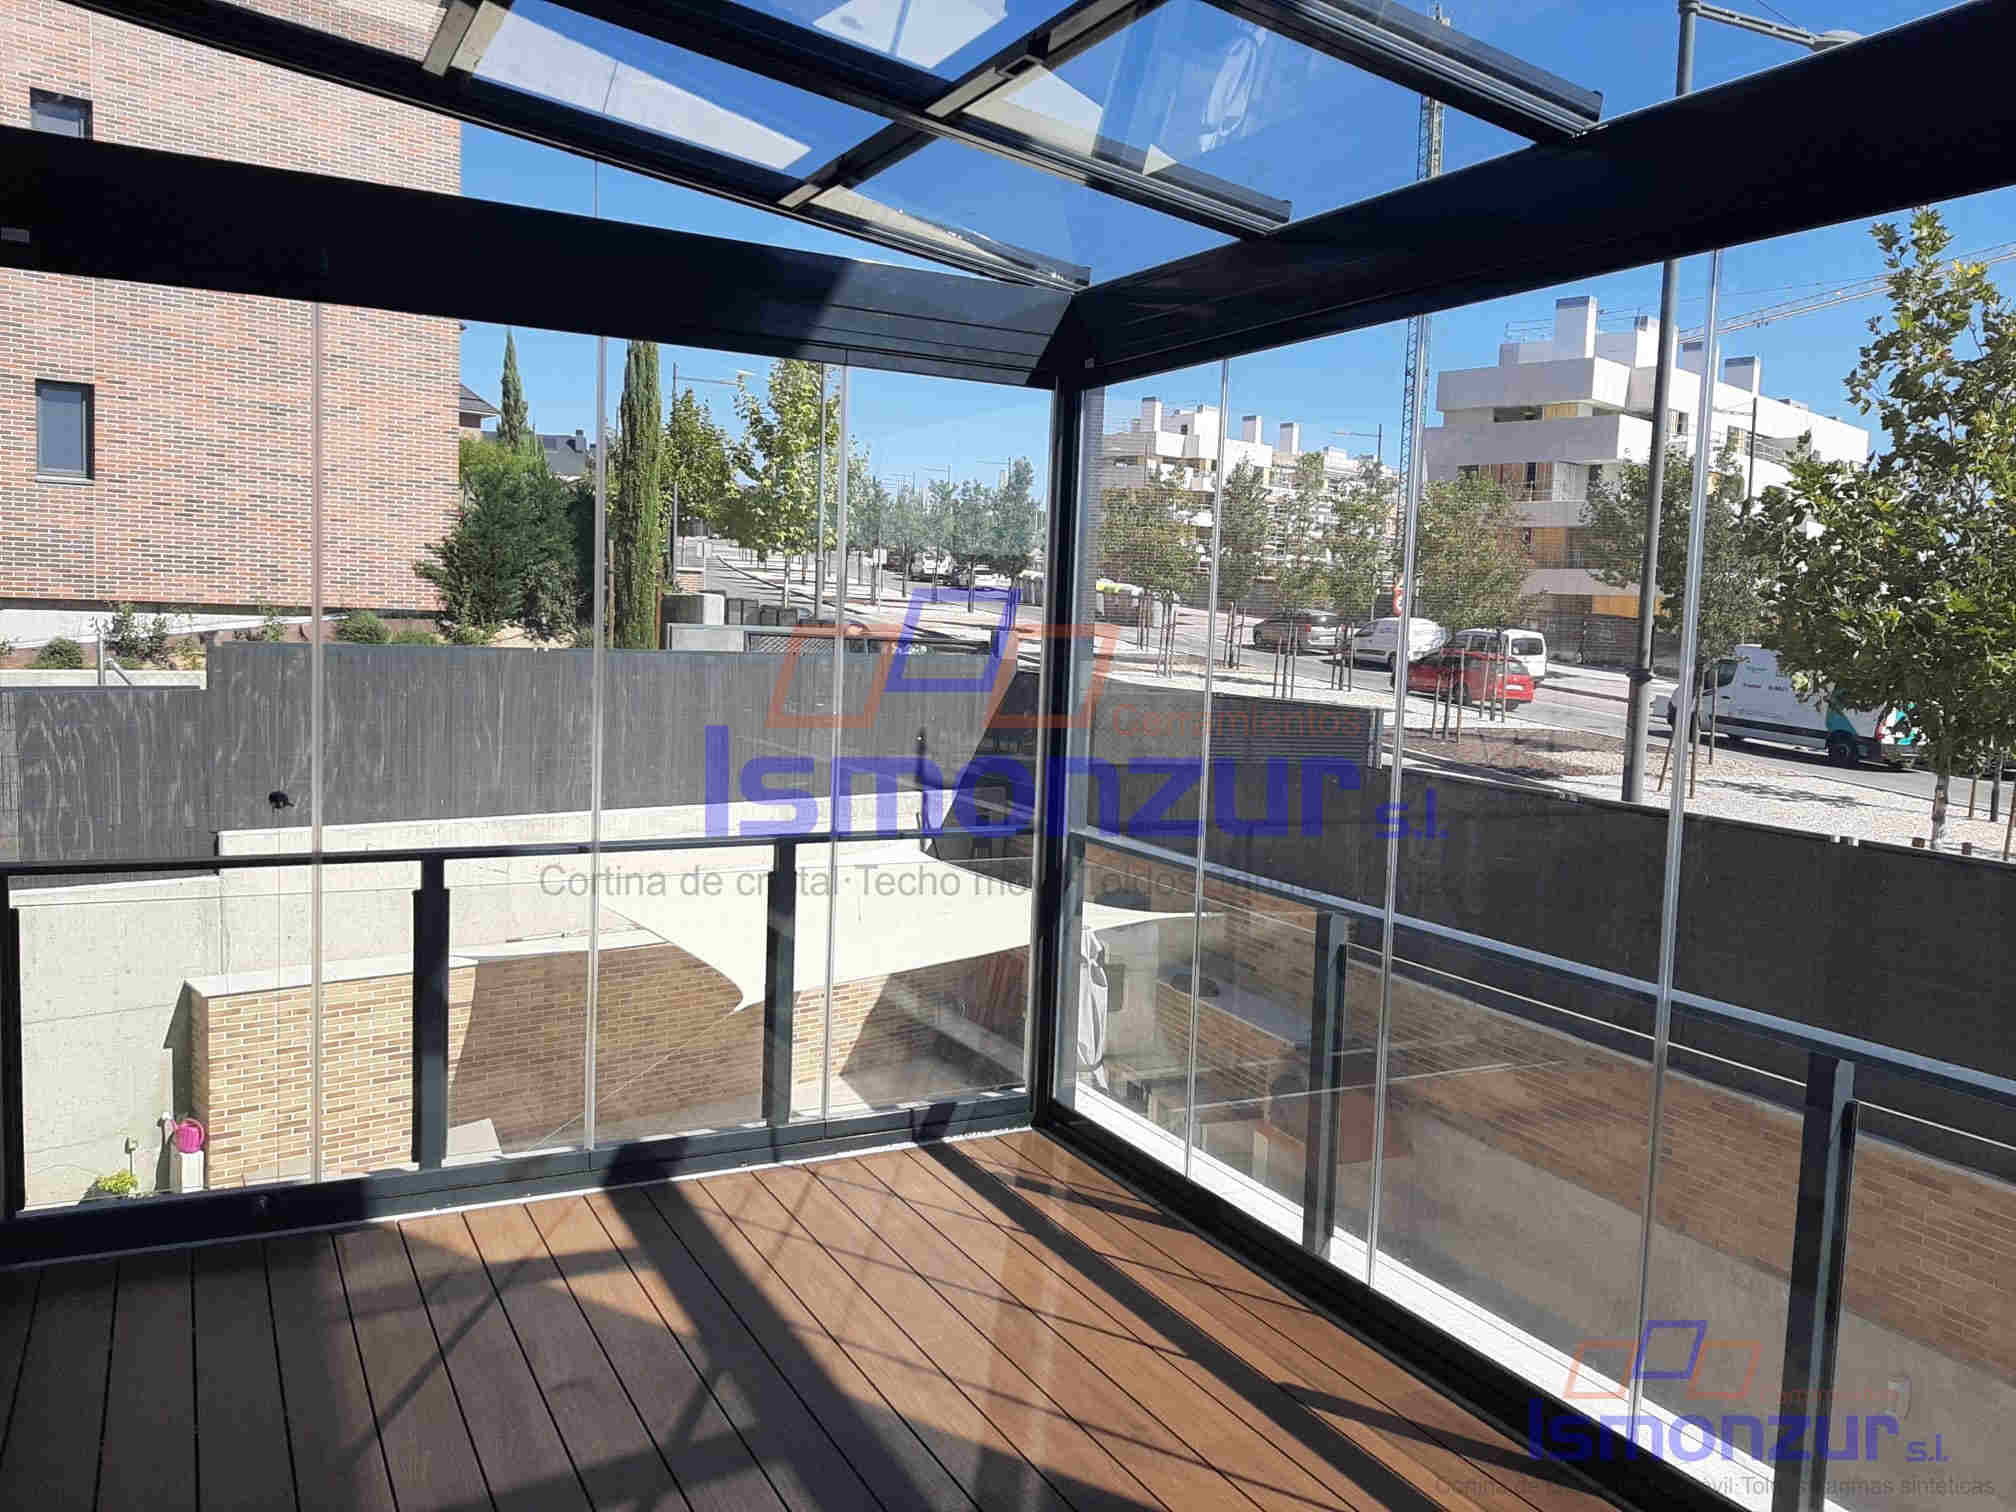 Techo móvil, cortinas de cristal y tarima sintética en terraza en Madrid